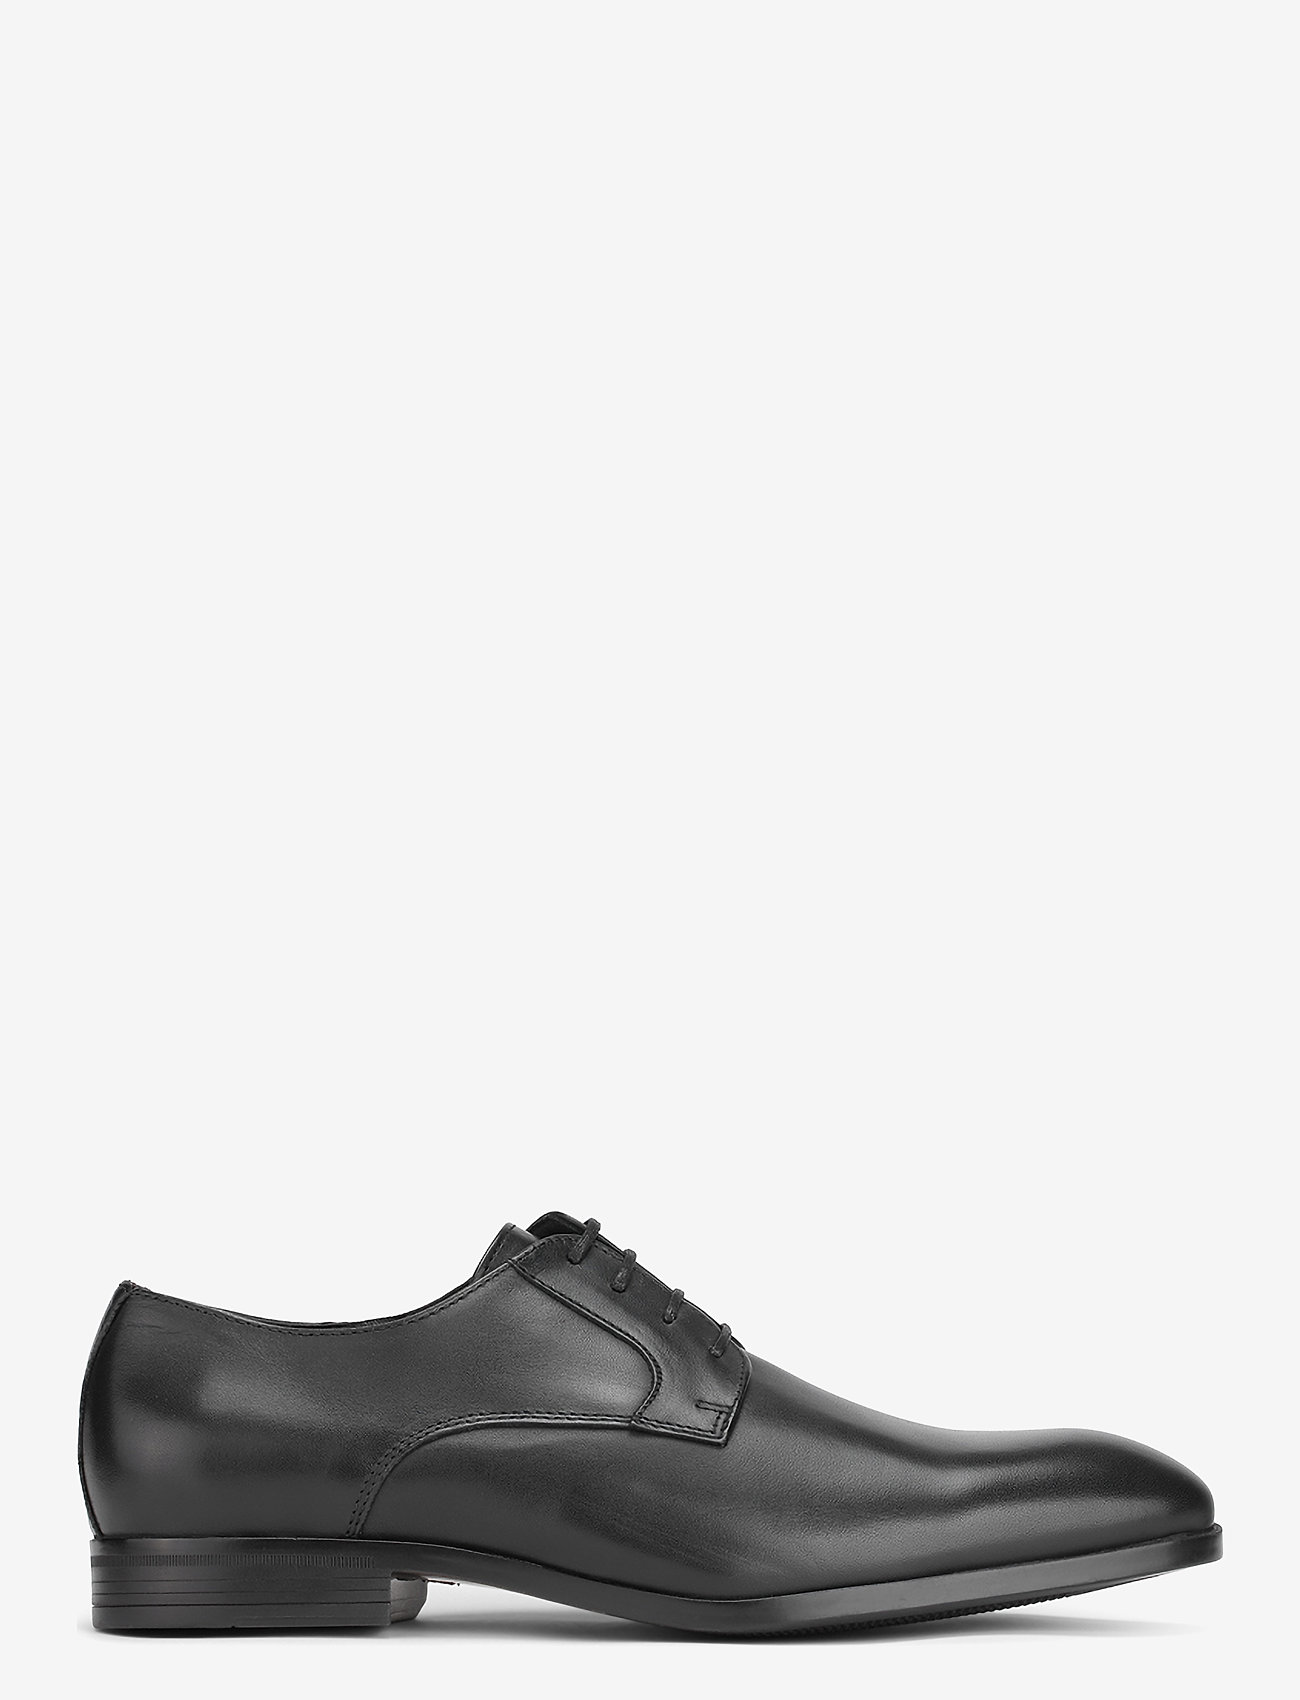 Playboy Footwear - PB10048 - veterschoenen - black leather - 1